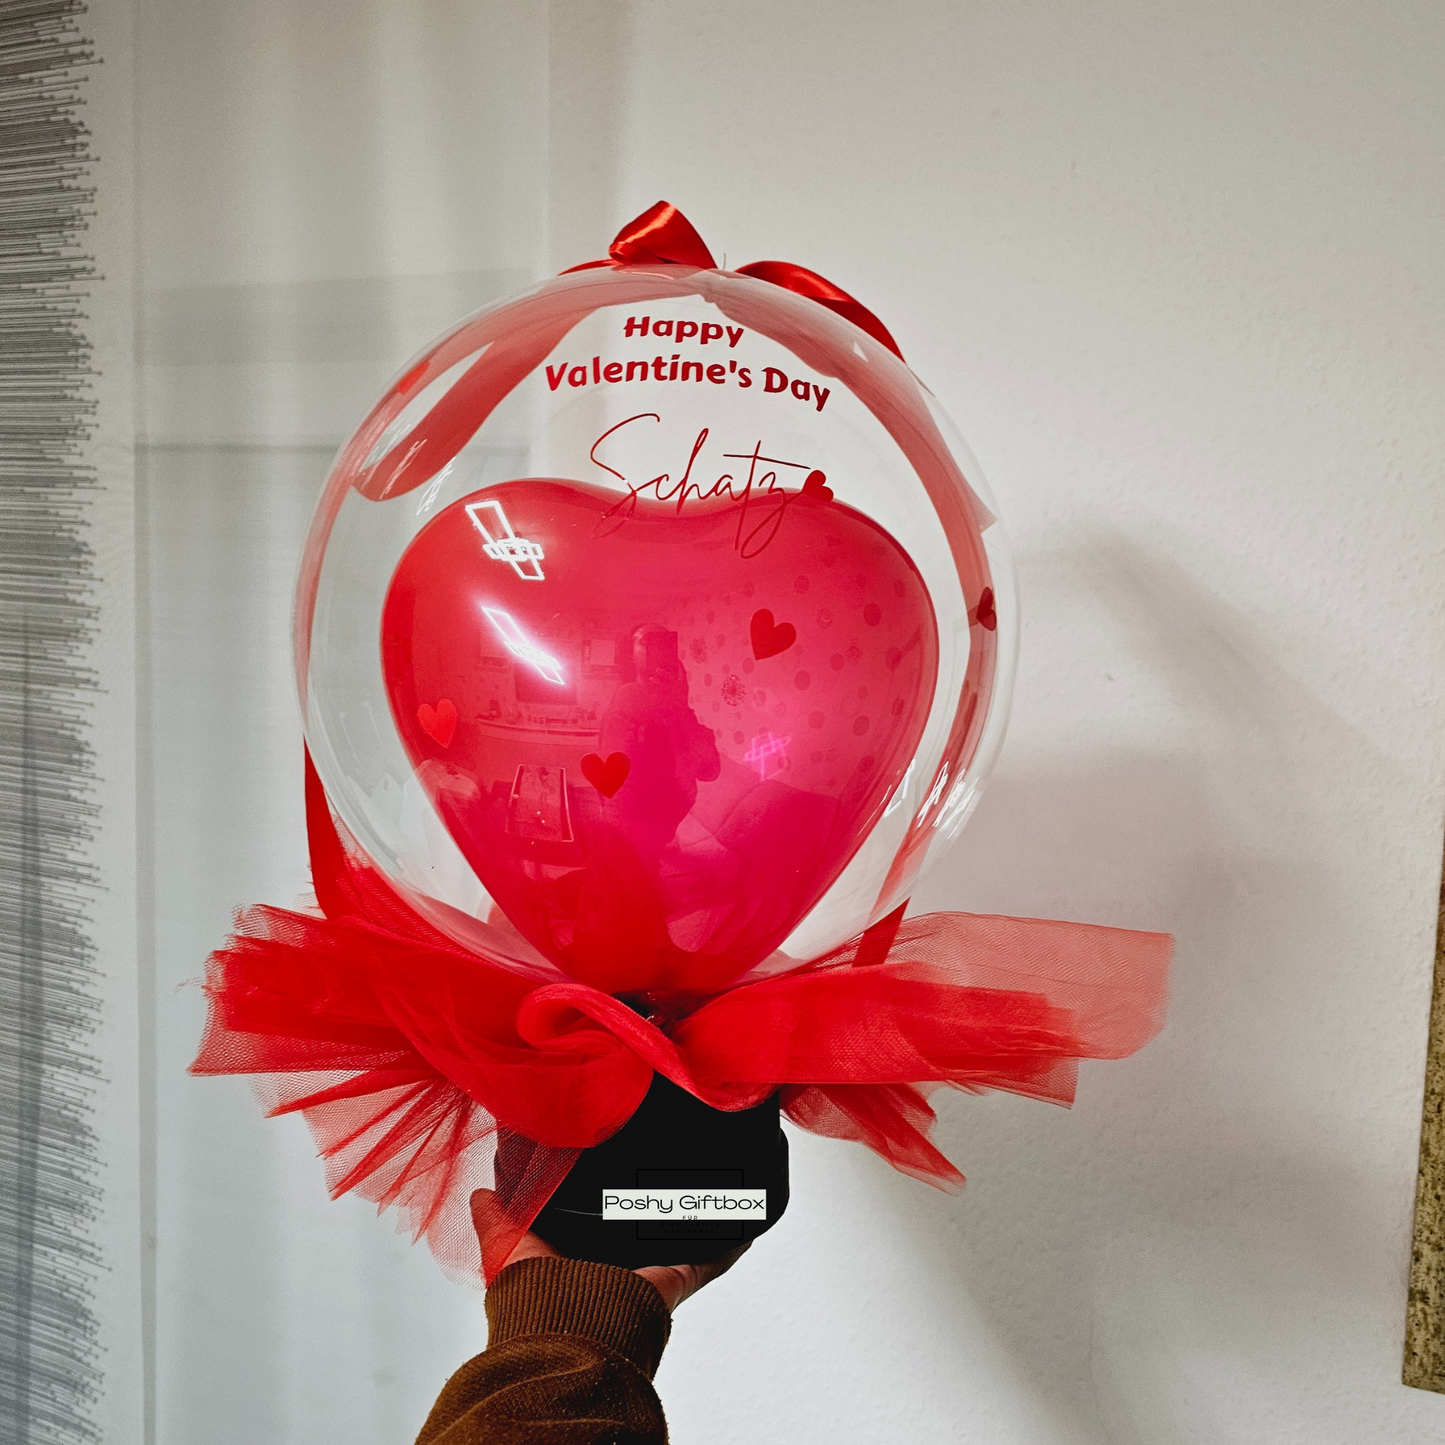 Ballon Geschenk "VALENTINSTAG"/Geburtstagsgeschenk/Hochzeitsgeschenk /Verlobungsgeschenk/Luftballon ROT/Valentinstag Geschenk/Herz Ballon mit Wunschtext PoshyGiftbox